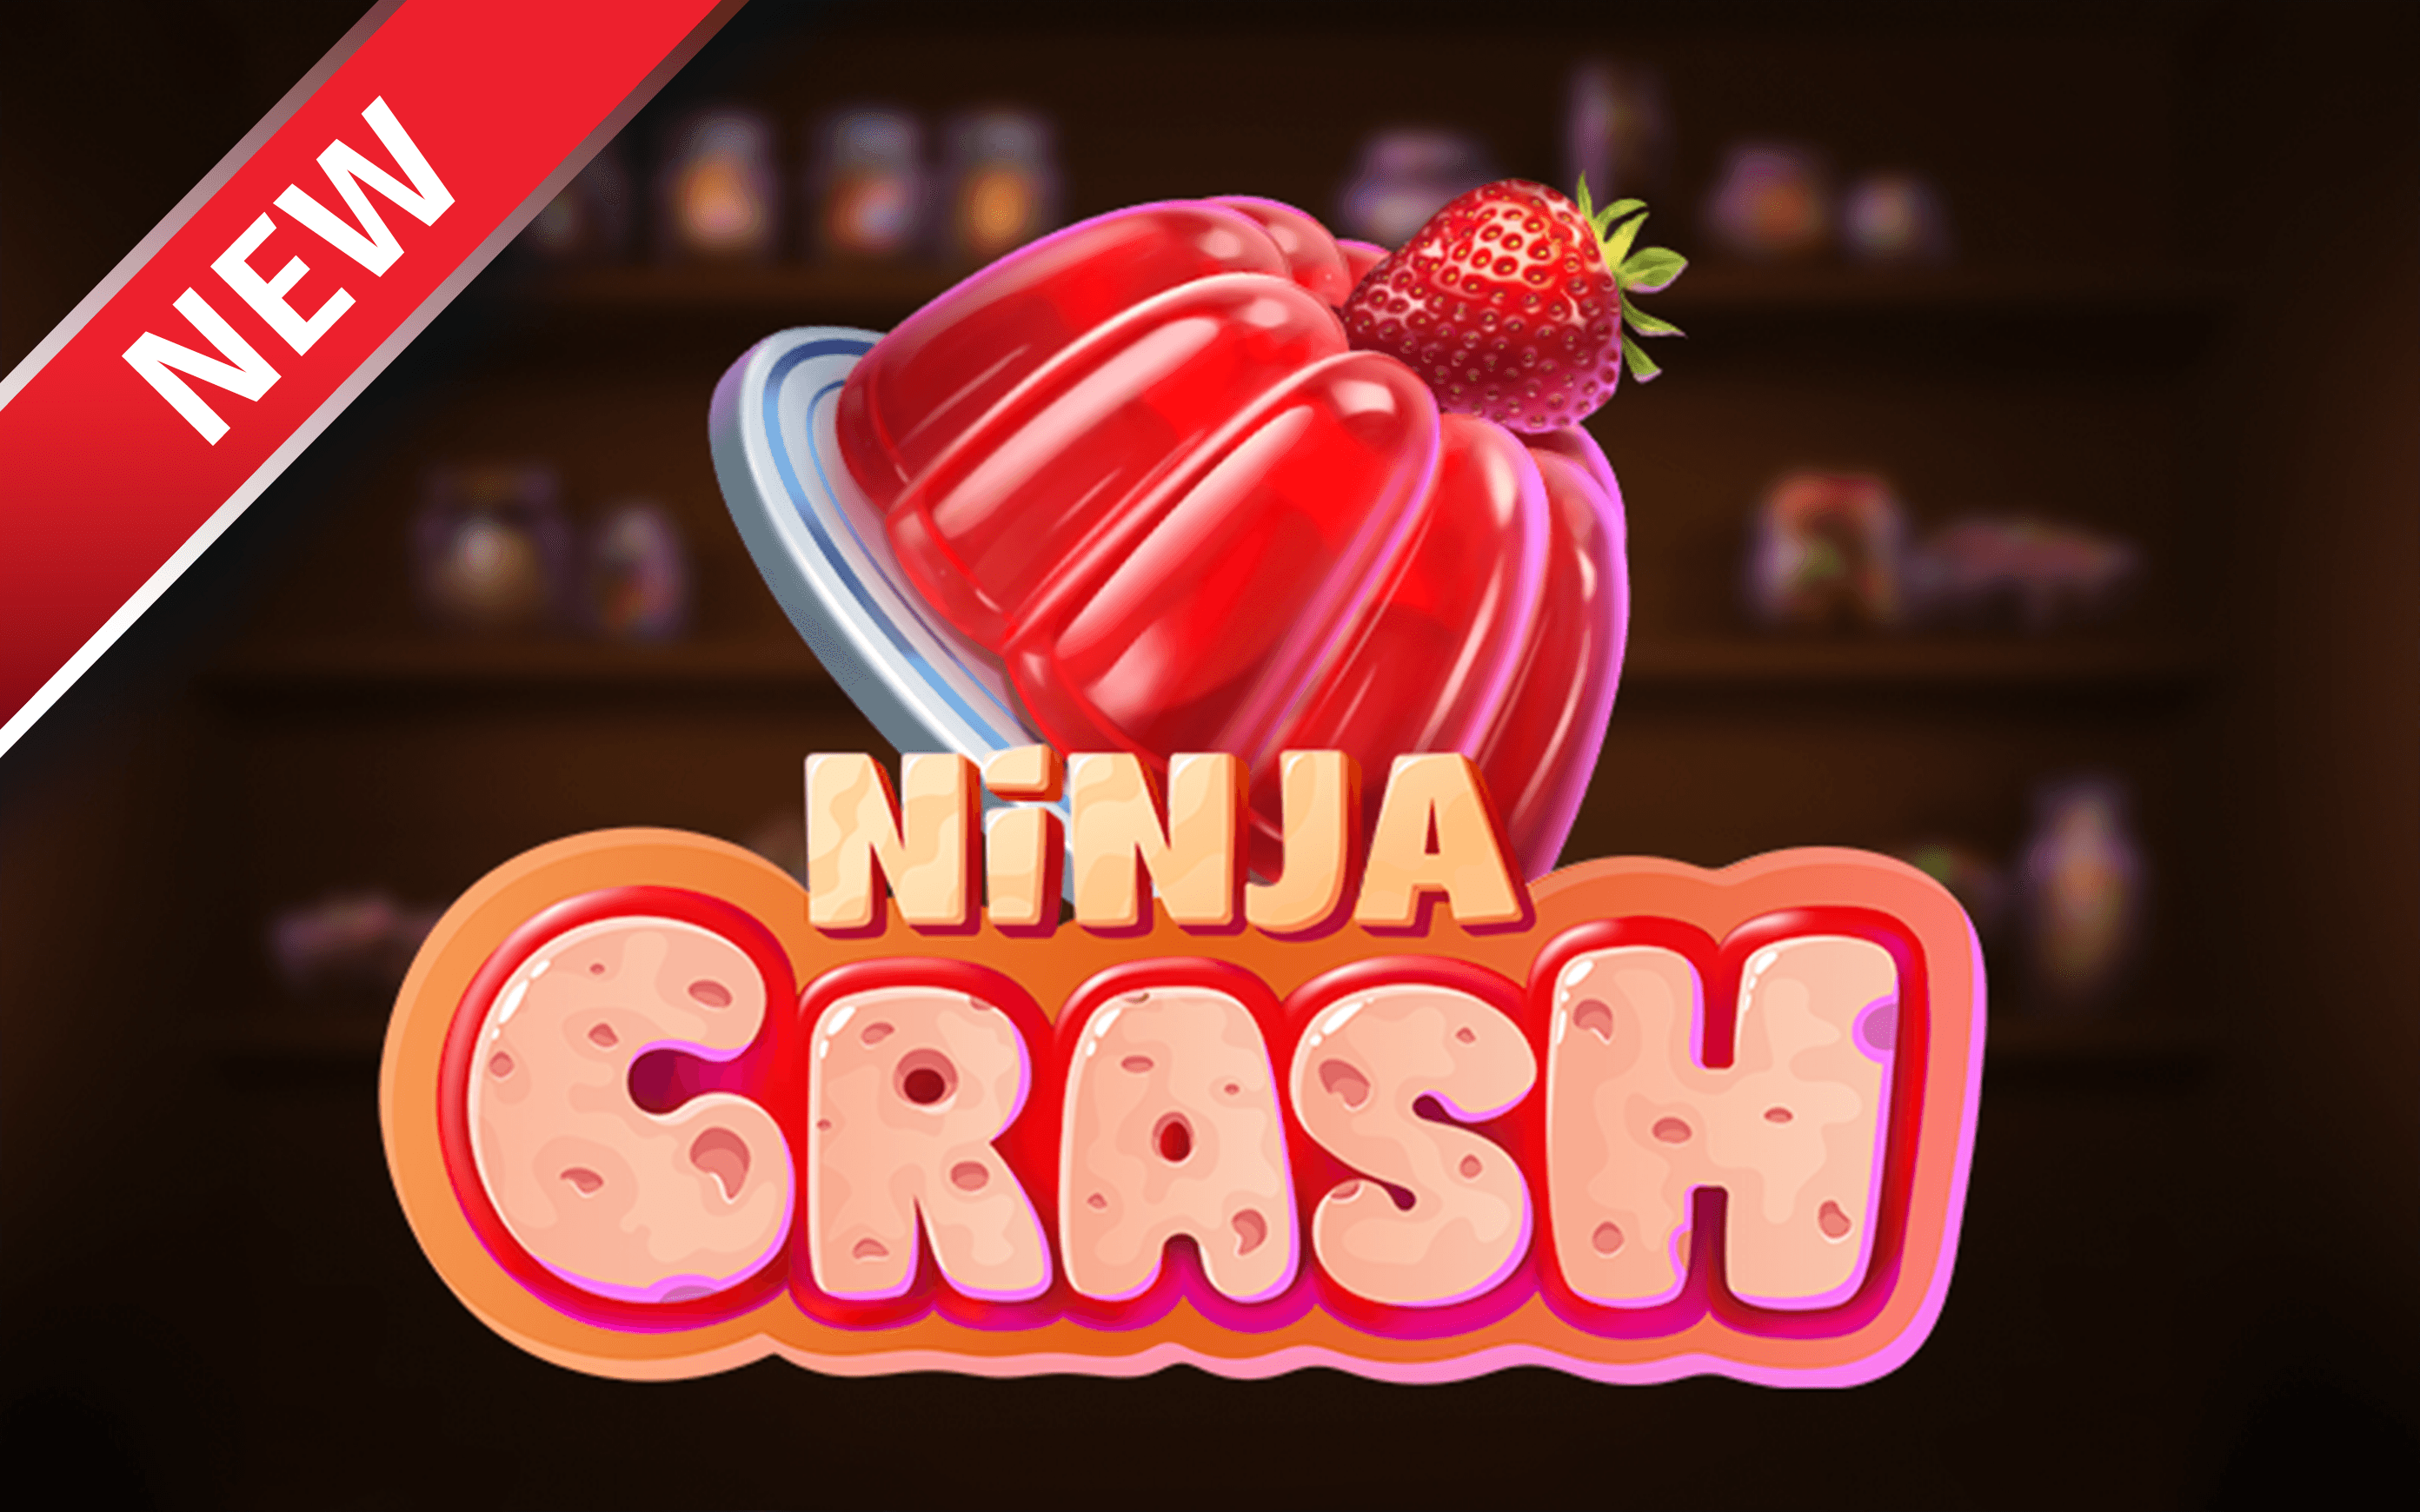 Play Ninja Crash on Starcasino.be online casino